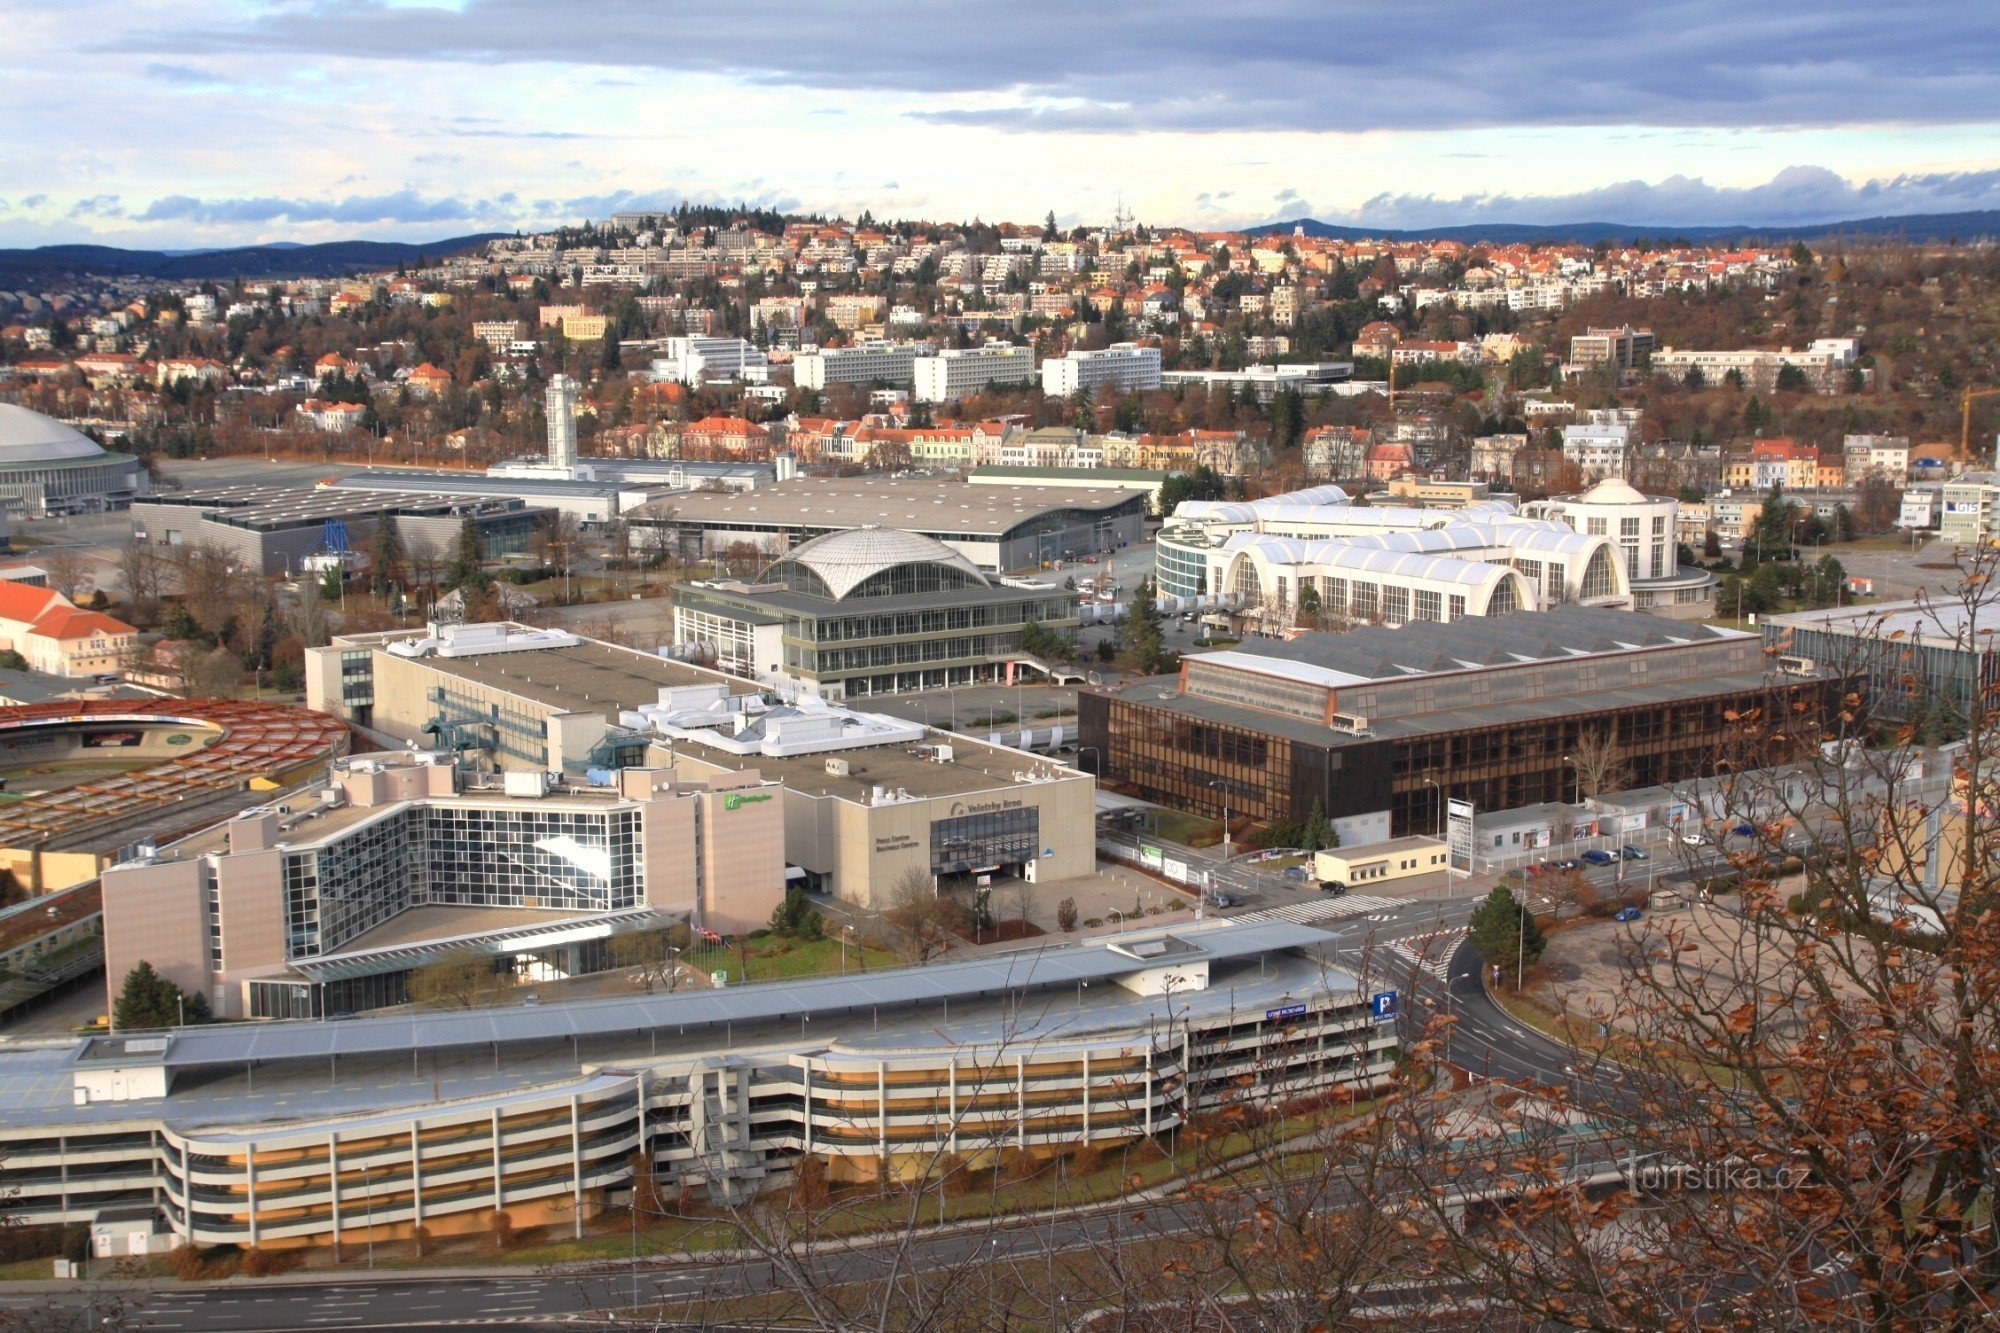 Vista desde el mirador de la parte central del Centro de Exposiciones, con el barrio de Masaryk al fondo